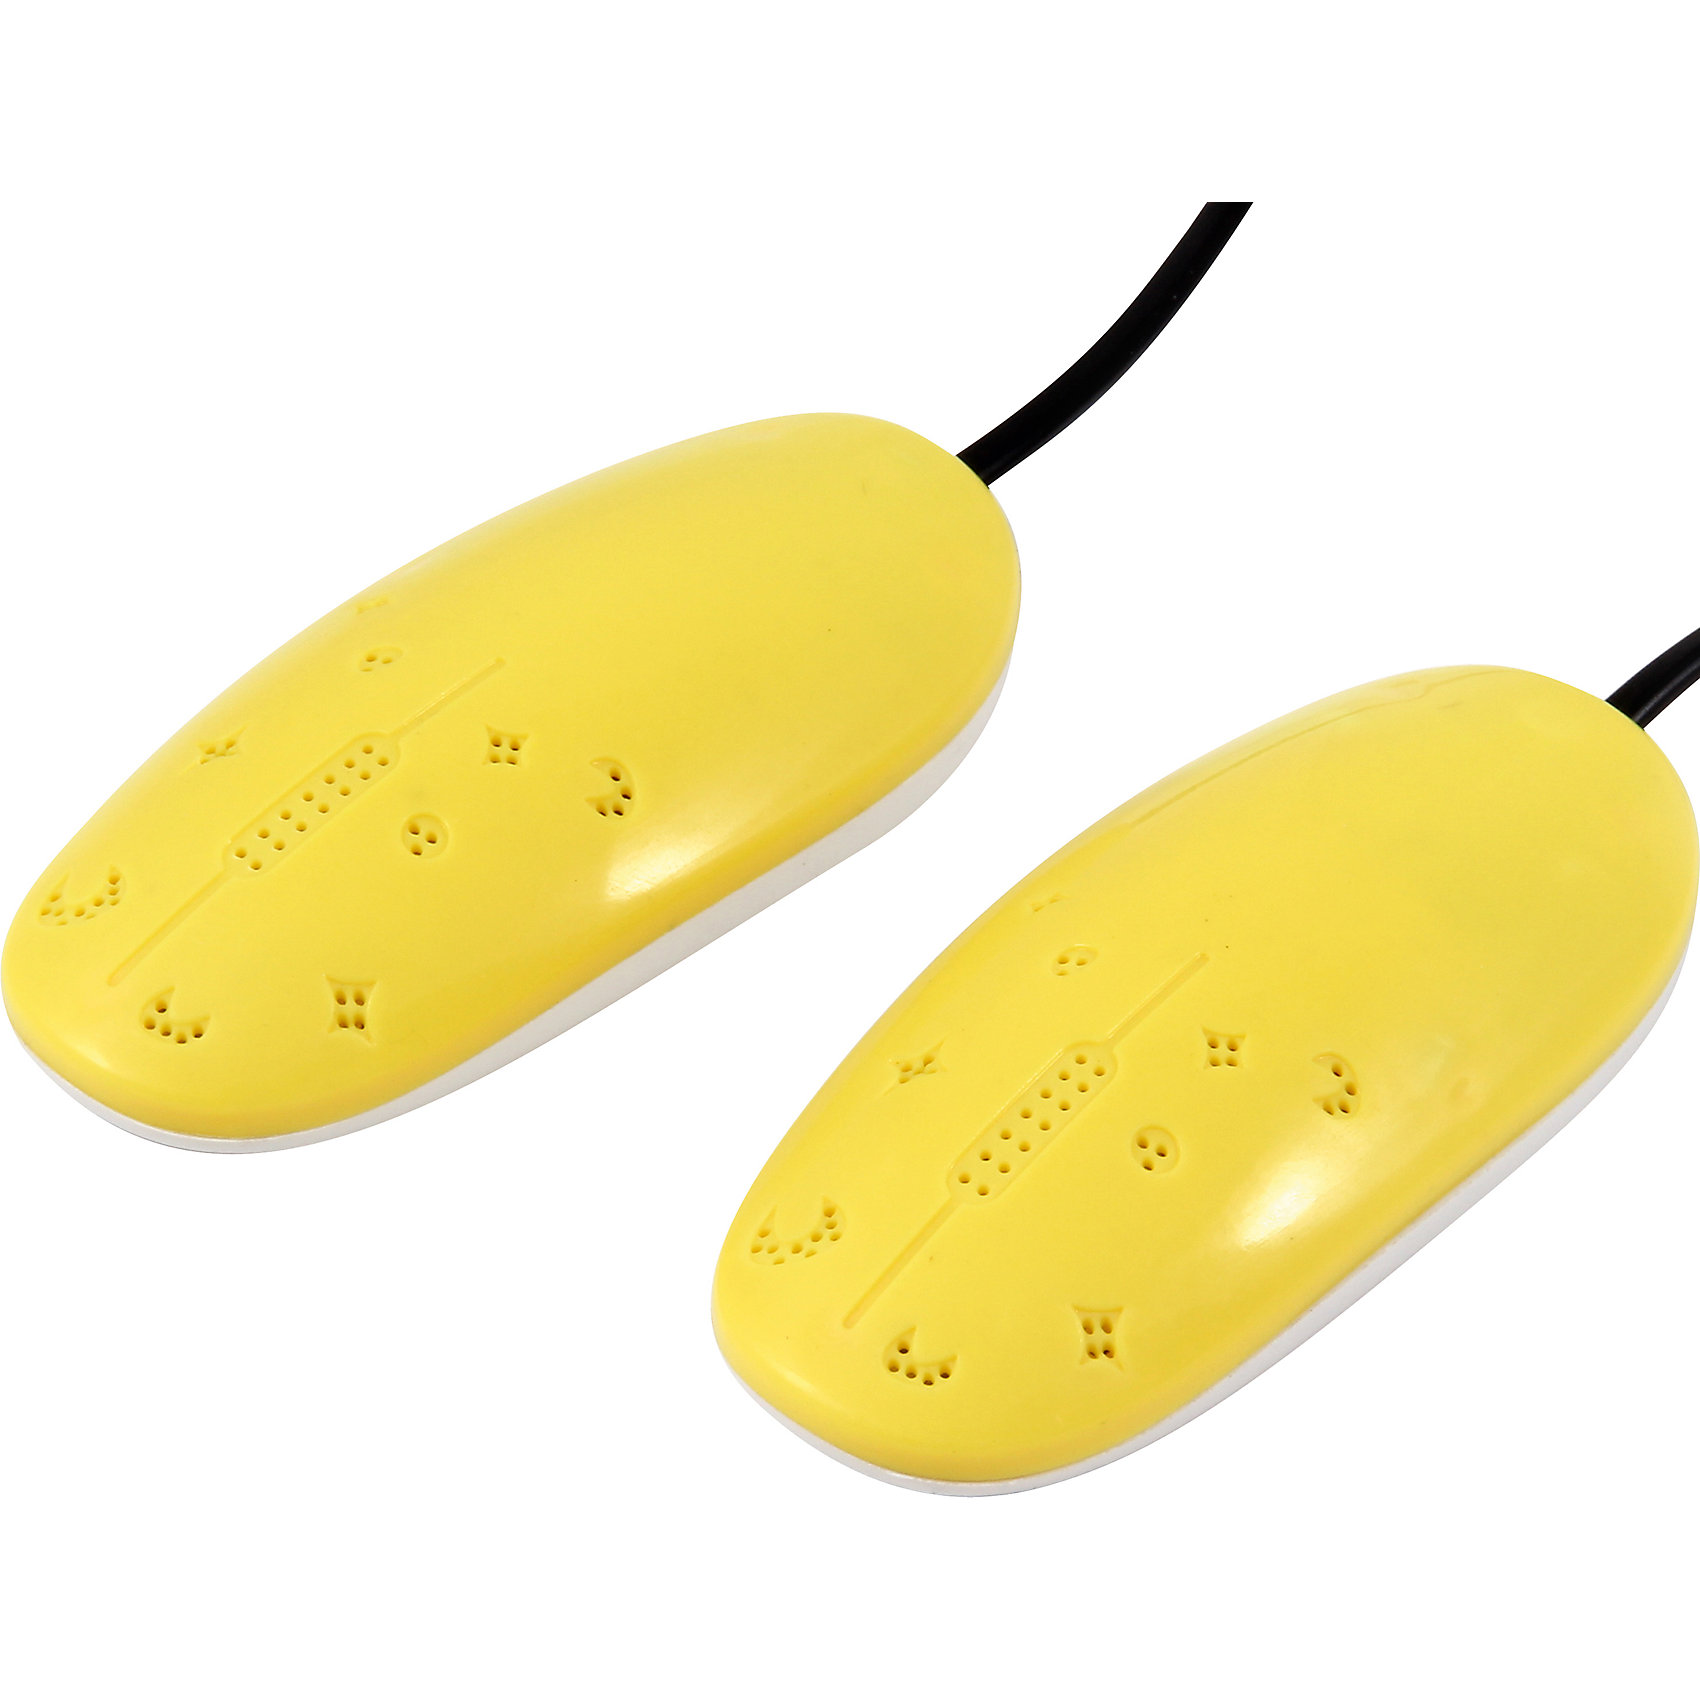 

Сушилка для обуви детская (блистер) RJ-33С, цвет жёлто-белый, RJ-33С